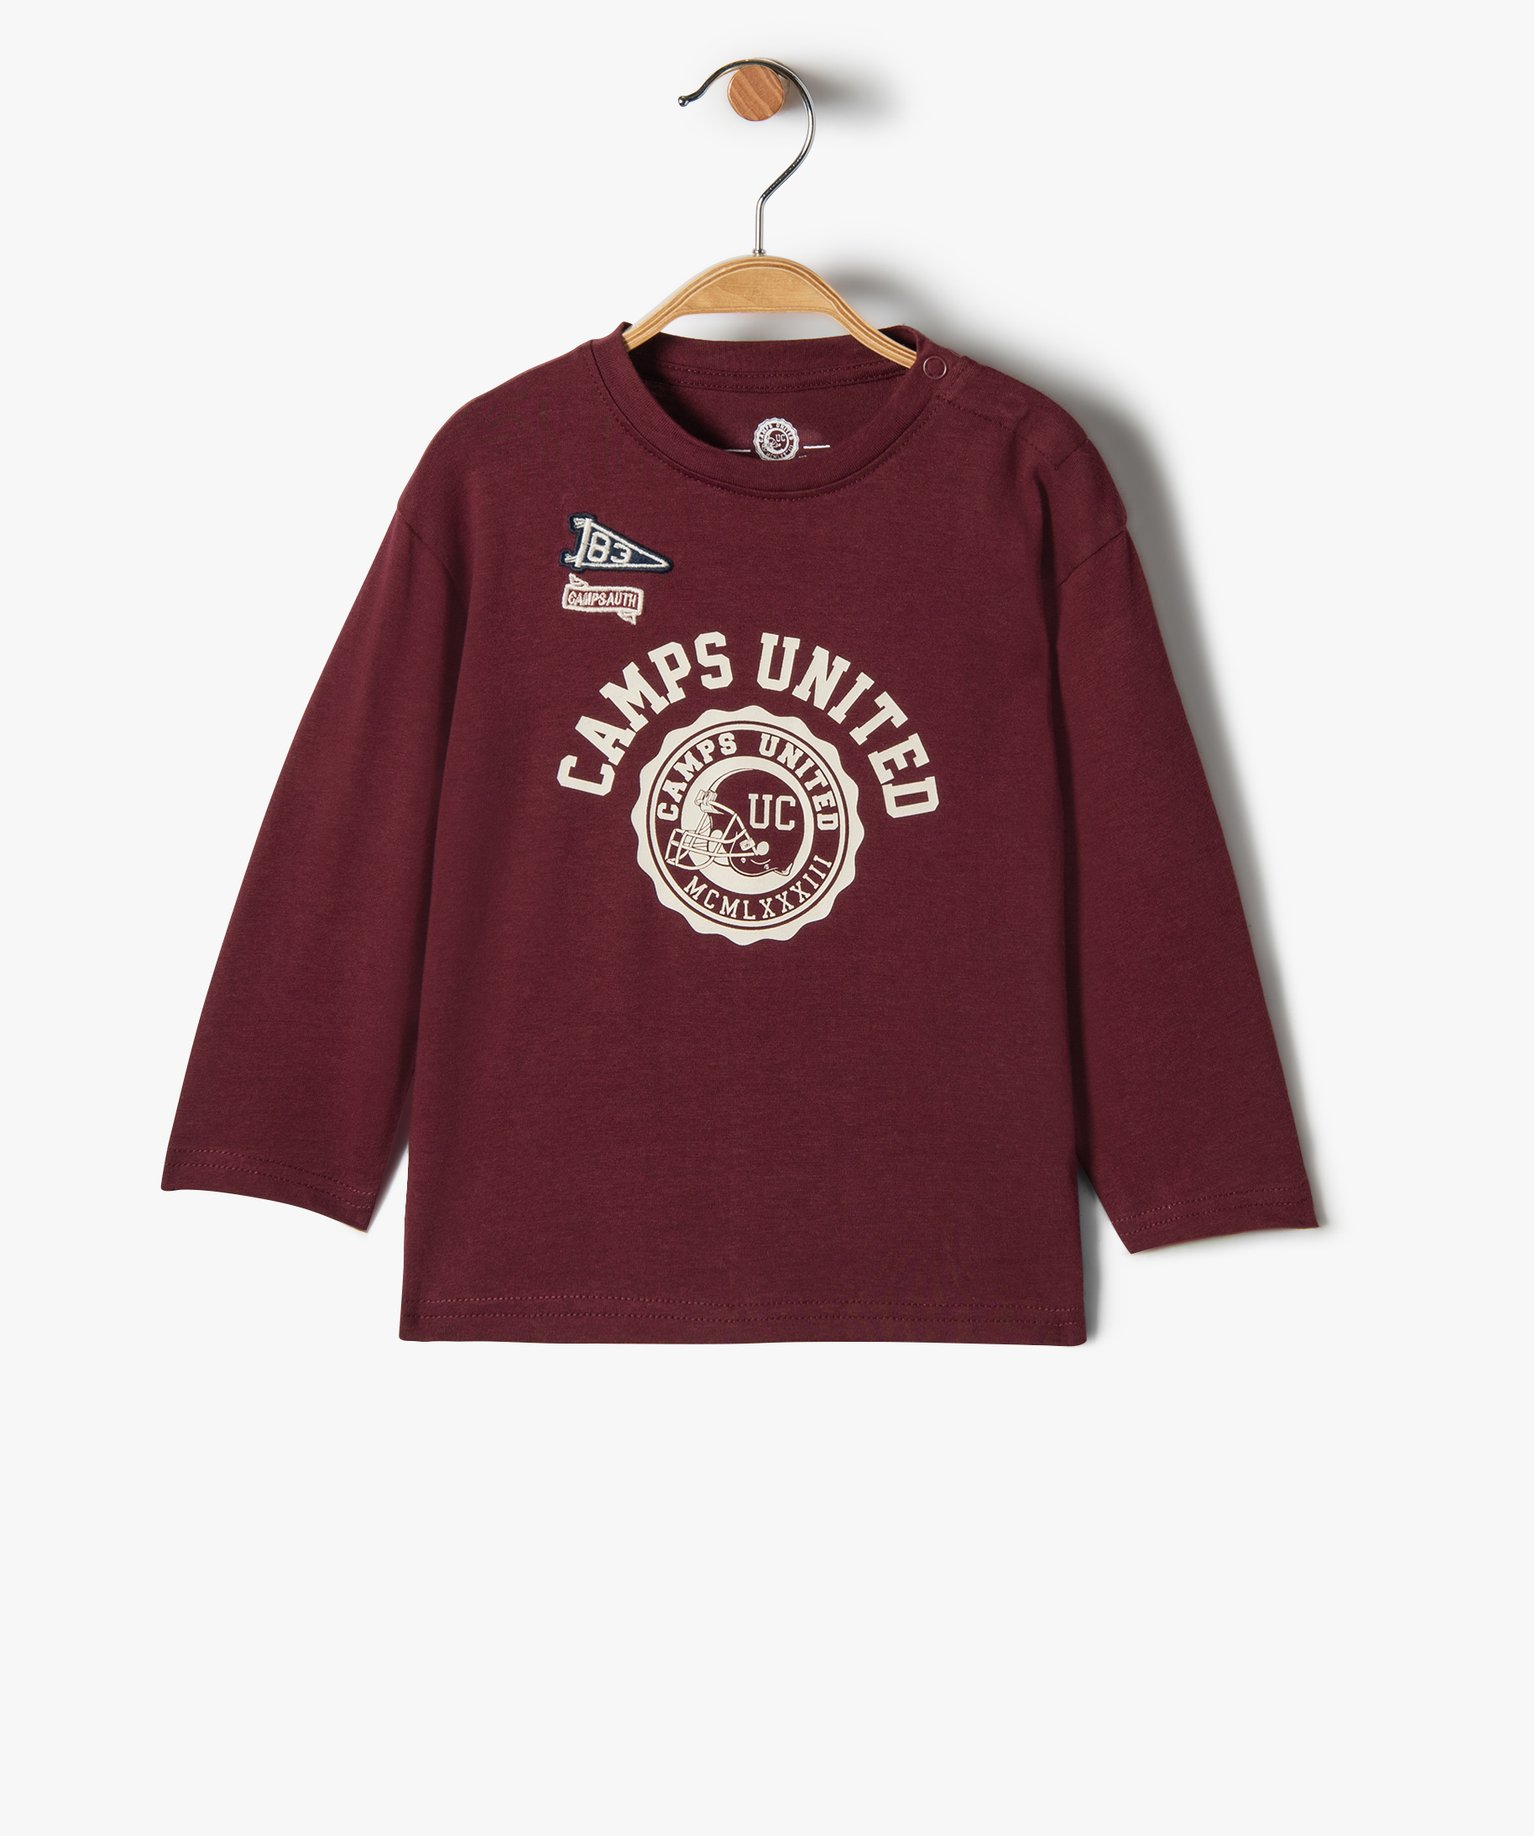 Tee-shirt bébé garçon à manches longues imprimé - Camps United - 12M - rouge fonce - CAMPS UNITED